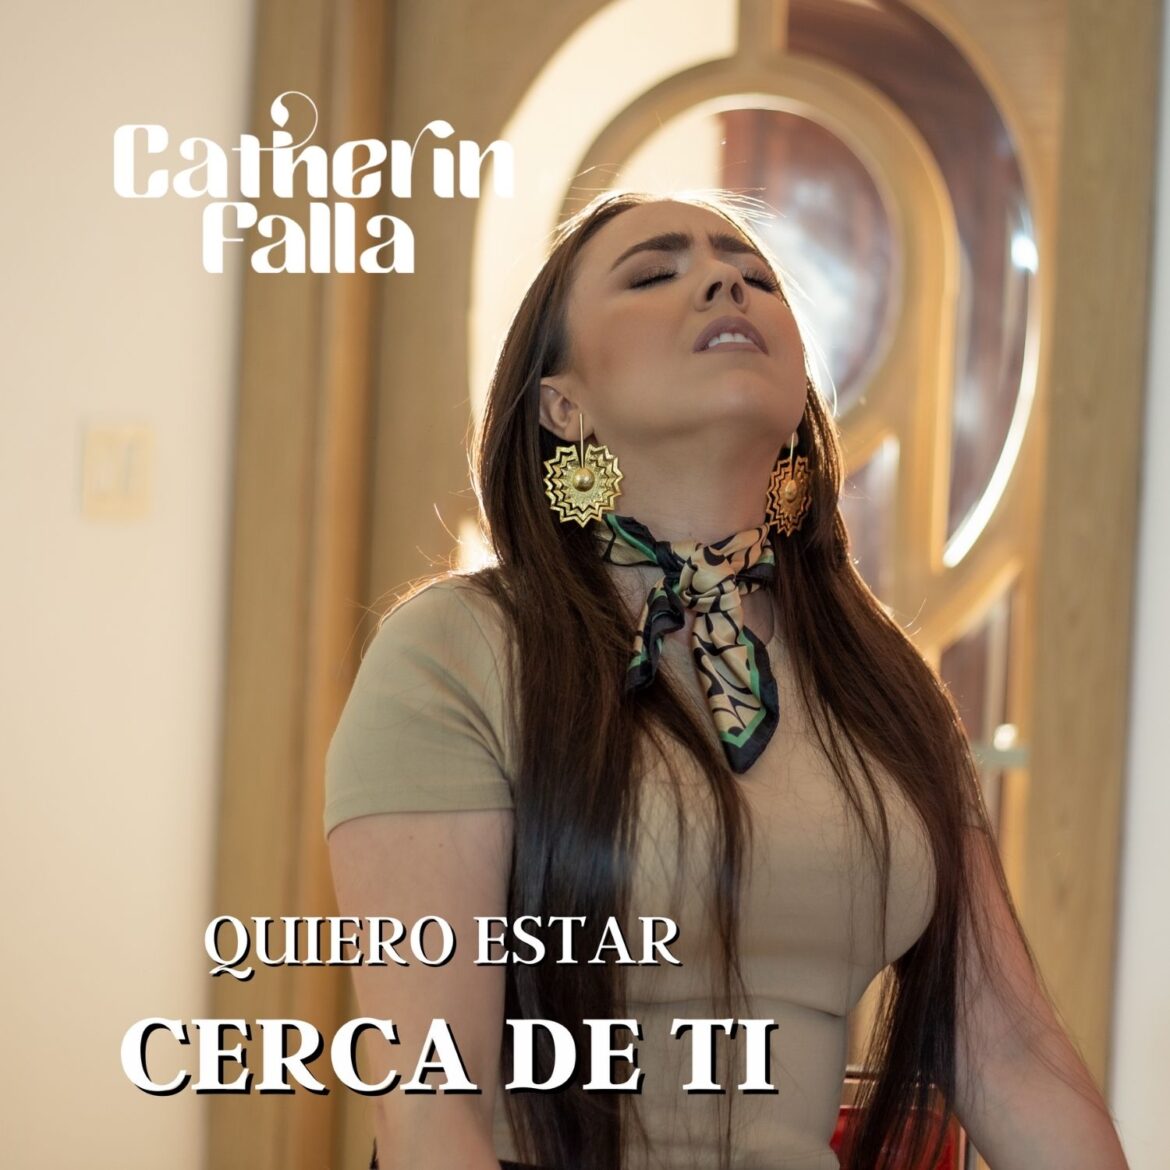 De Colombia al mundo Catherin Falla lanza su nuevo tema “Quiero Estar Cerca De Tí”